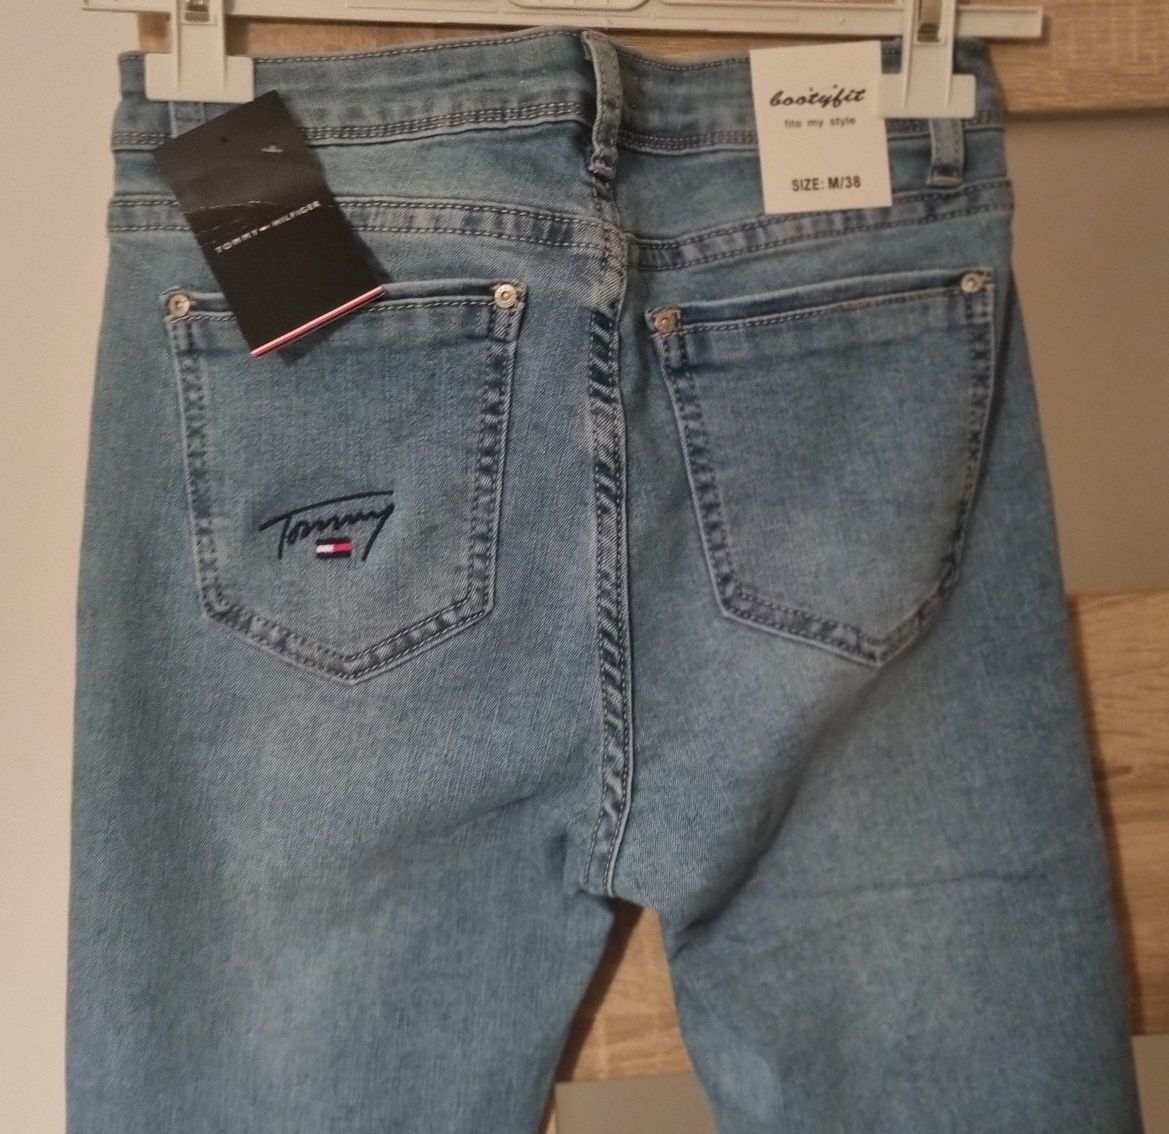 Spodnie jeans jasne rurki Tommy Th r. 38, M ,S niebieskie